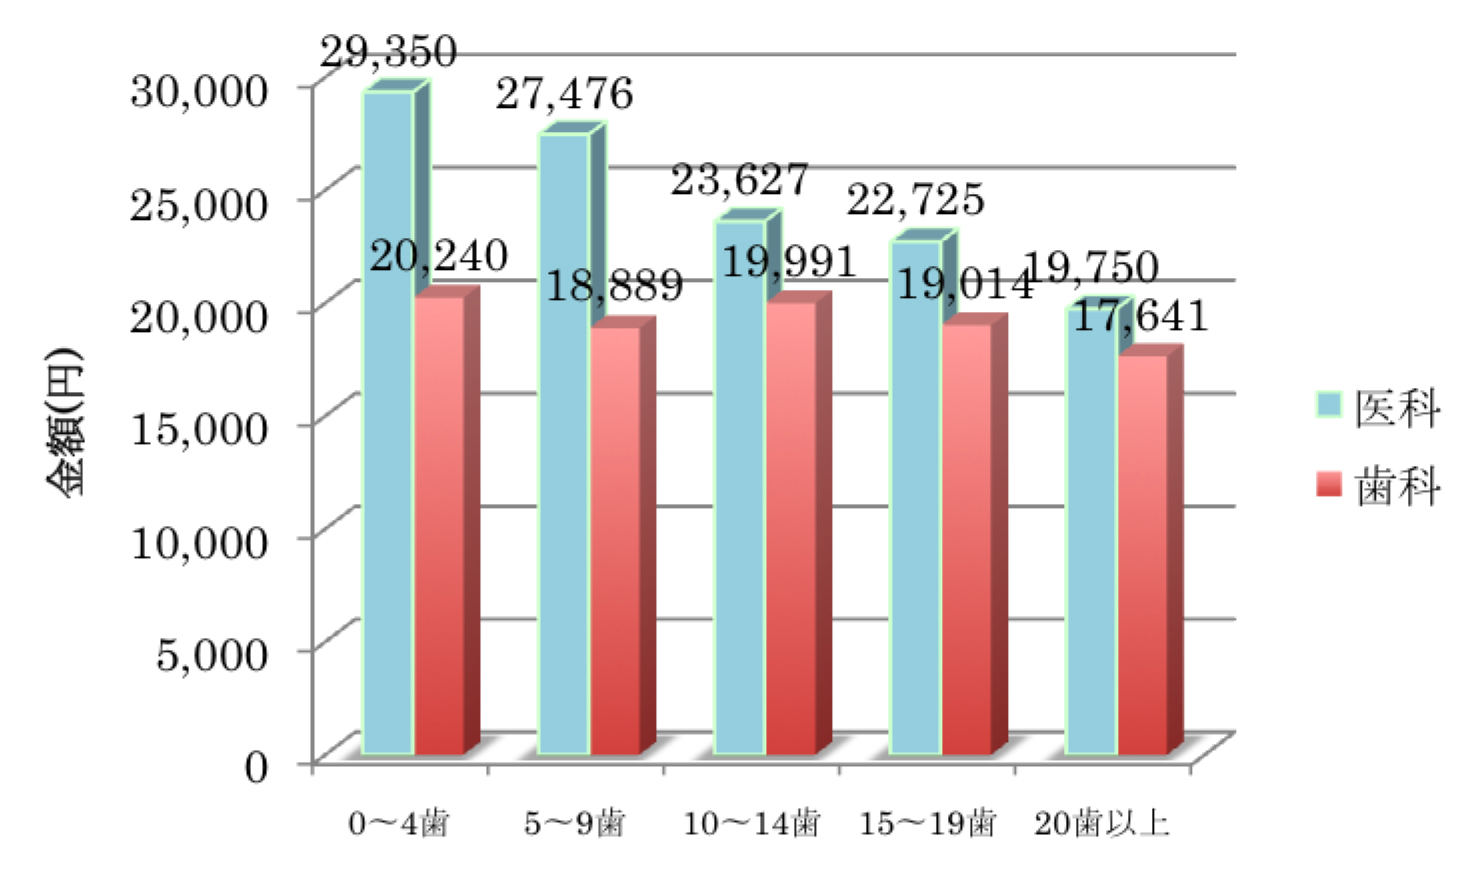 図8 香川県老人医療費適正化に関する検討委員会調査(平成16・17年)